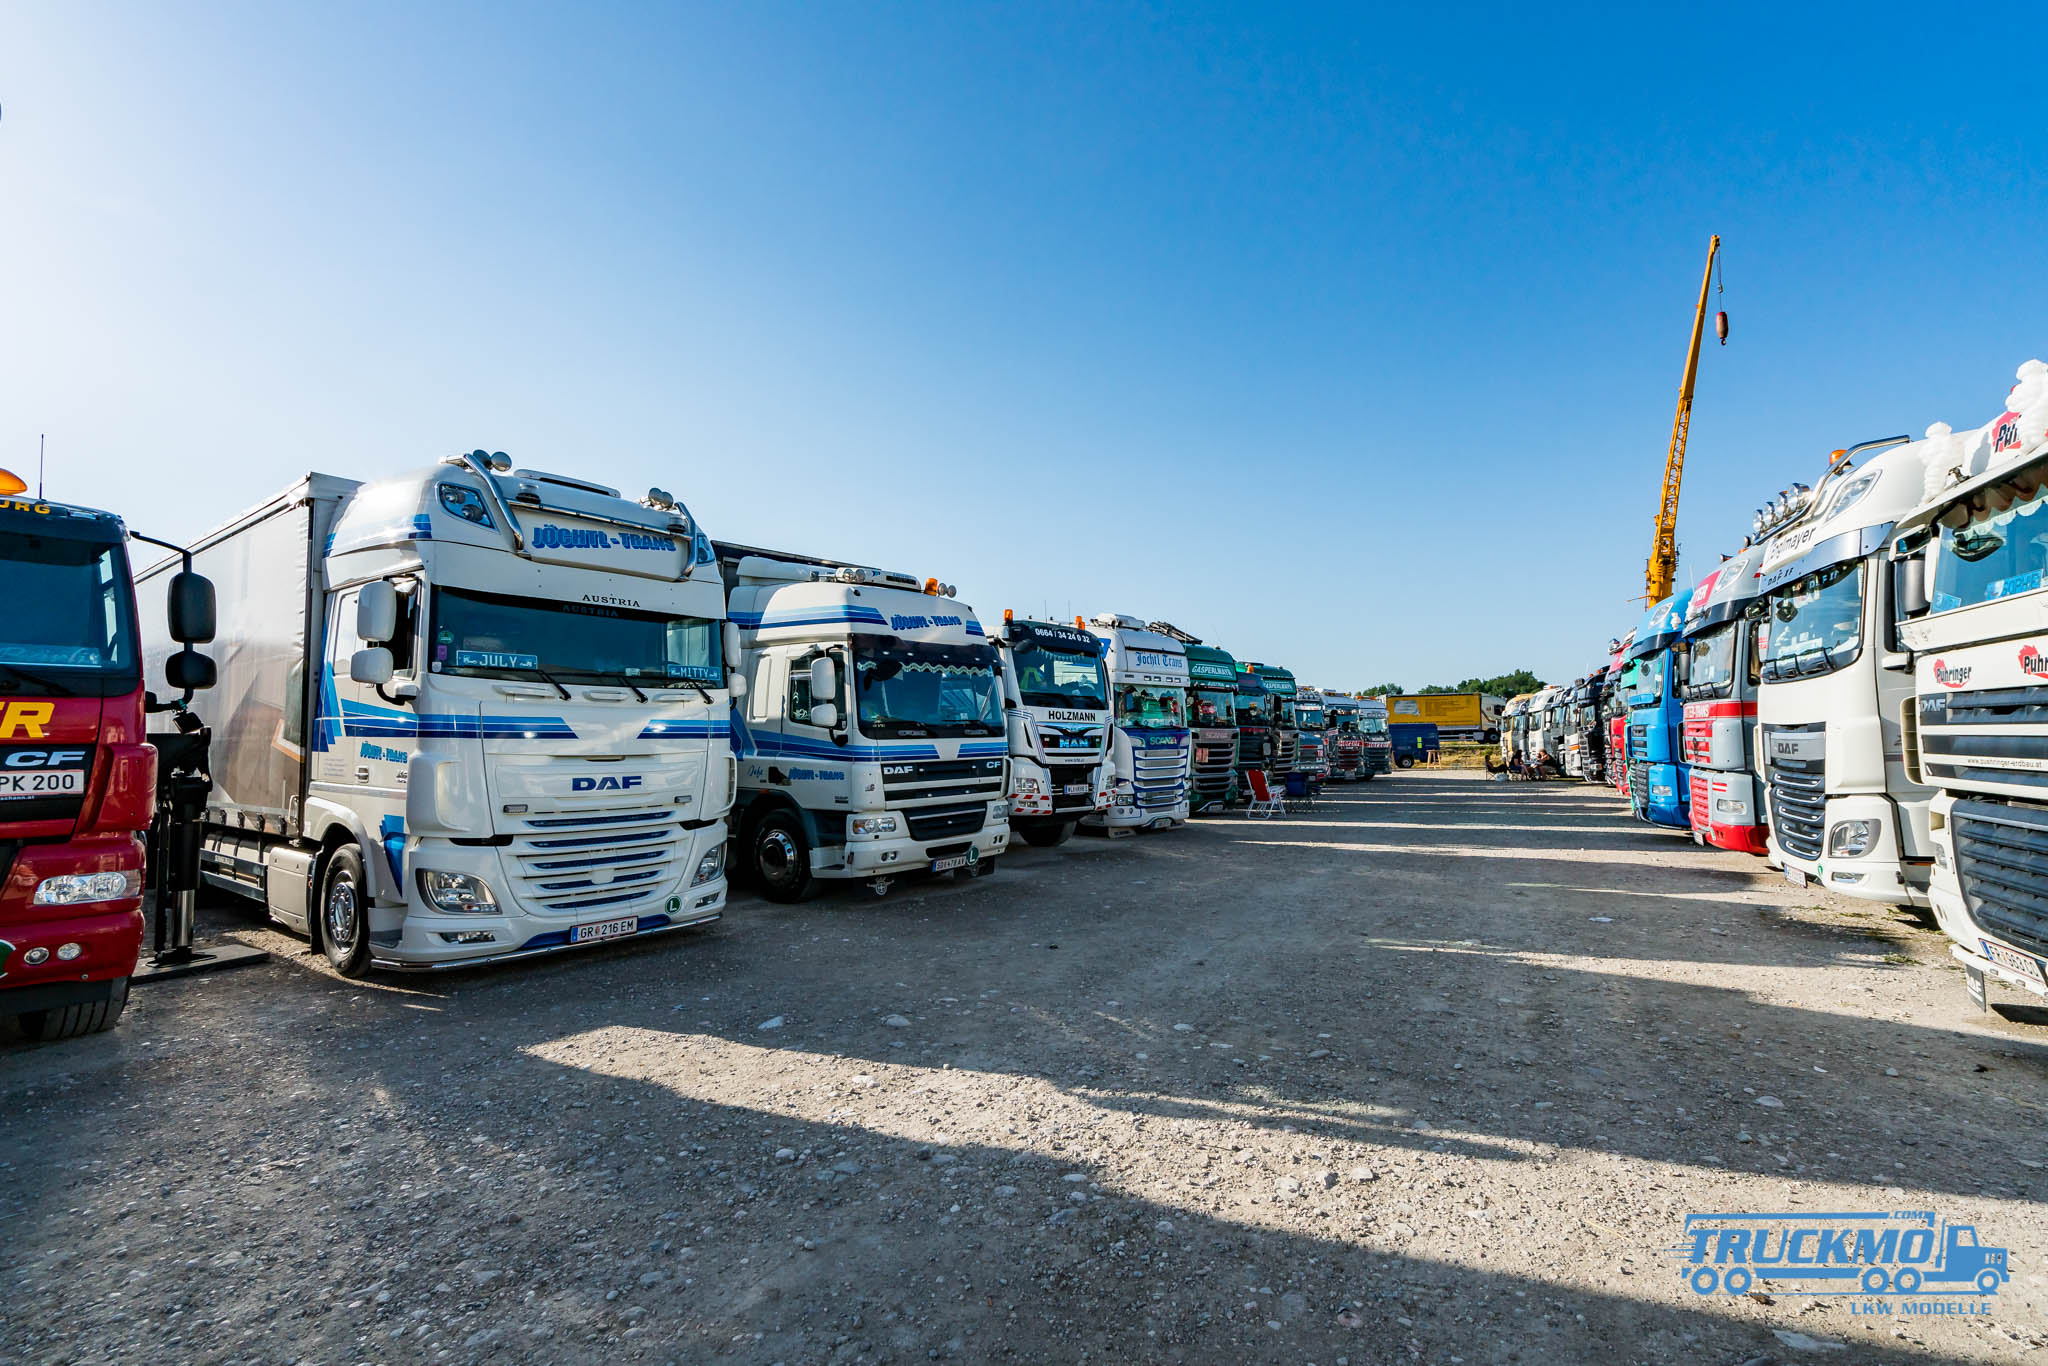 Truck_Event_Austria_Vorchdorf_2017_Truckmo_Scania_MAN_Volvo_Mercedes_Iveco_Showtruck_LKW_Herpa_Modellbau_Beitrag_5 (65 von 89)